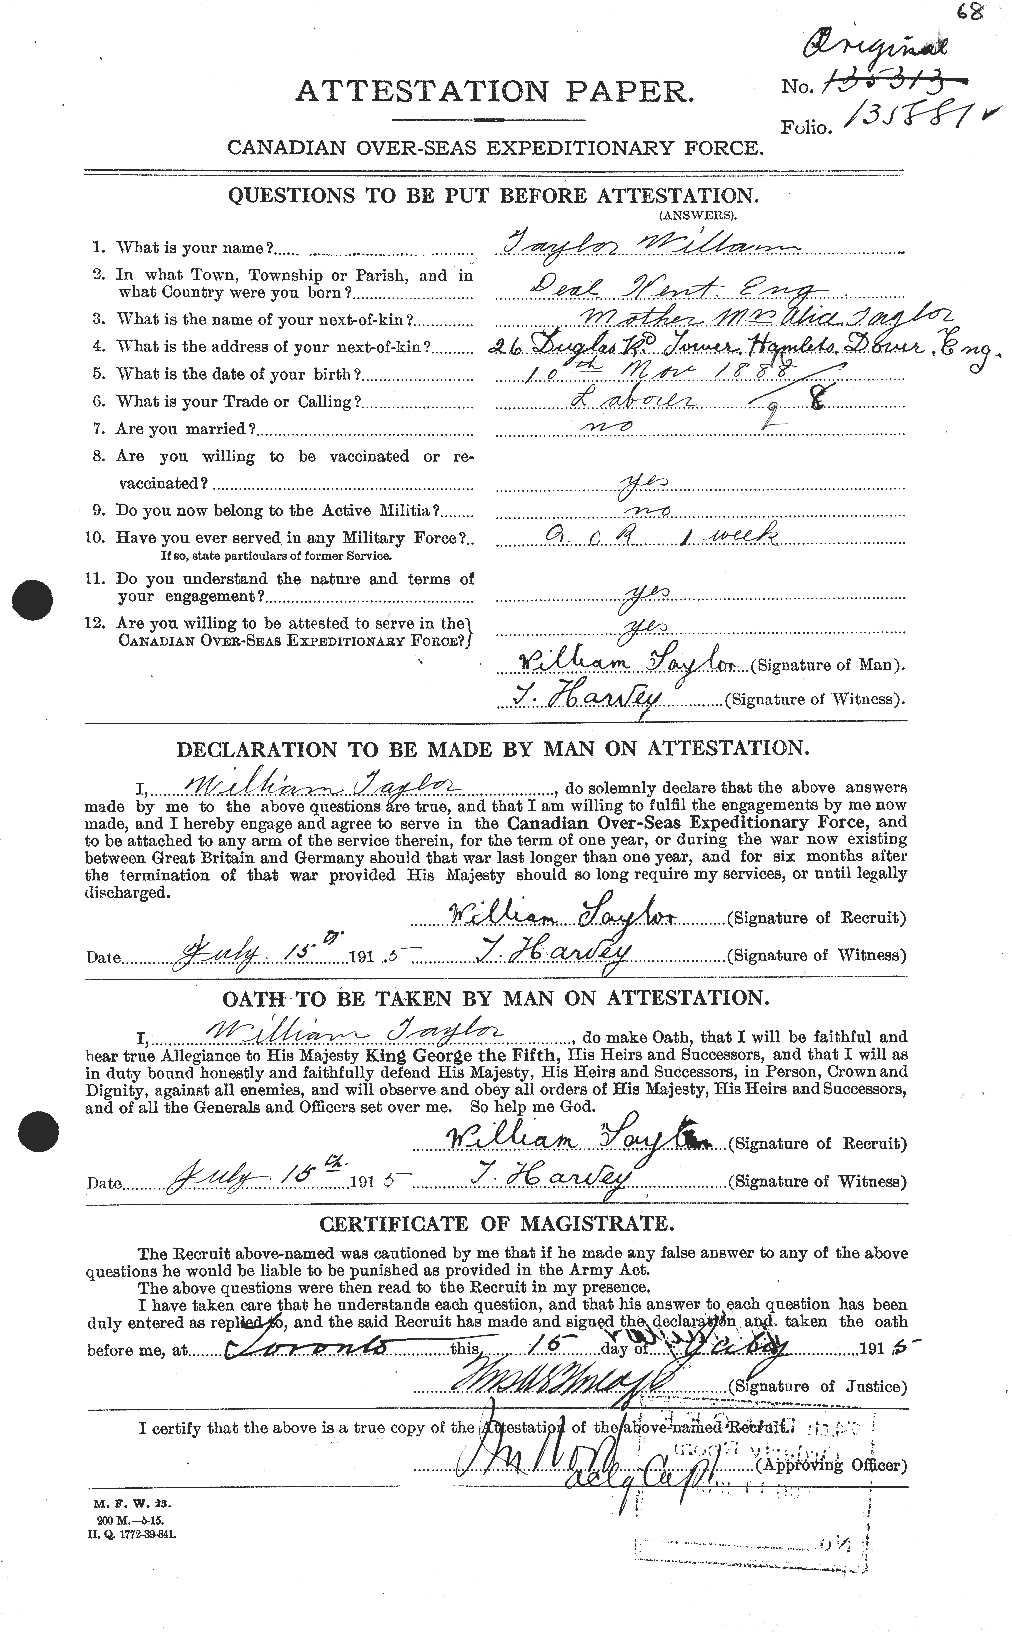 Dossiers du Personnel de la Première Guerre mondiale - CEC 628160a